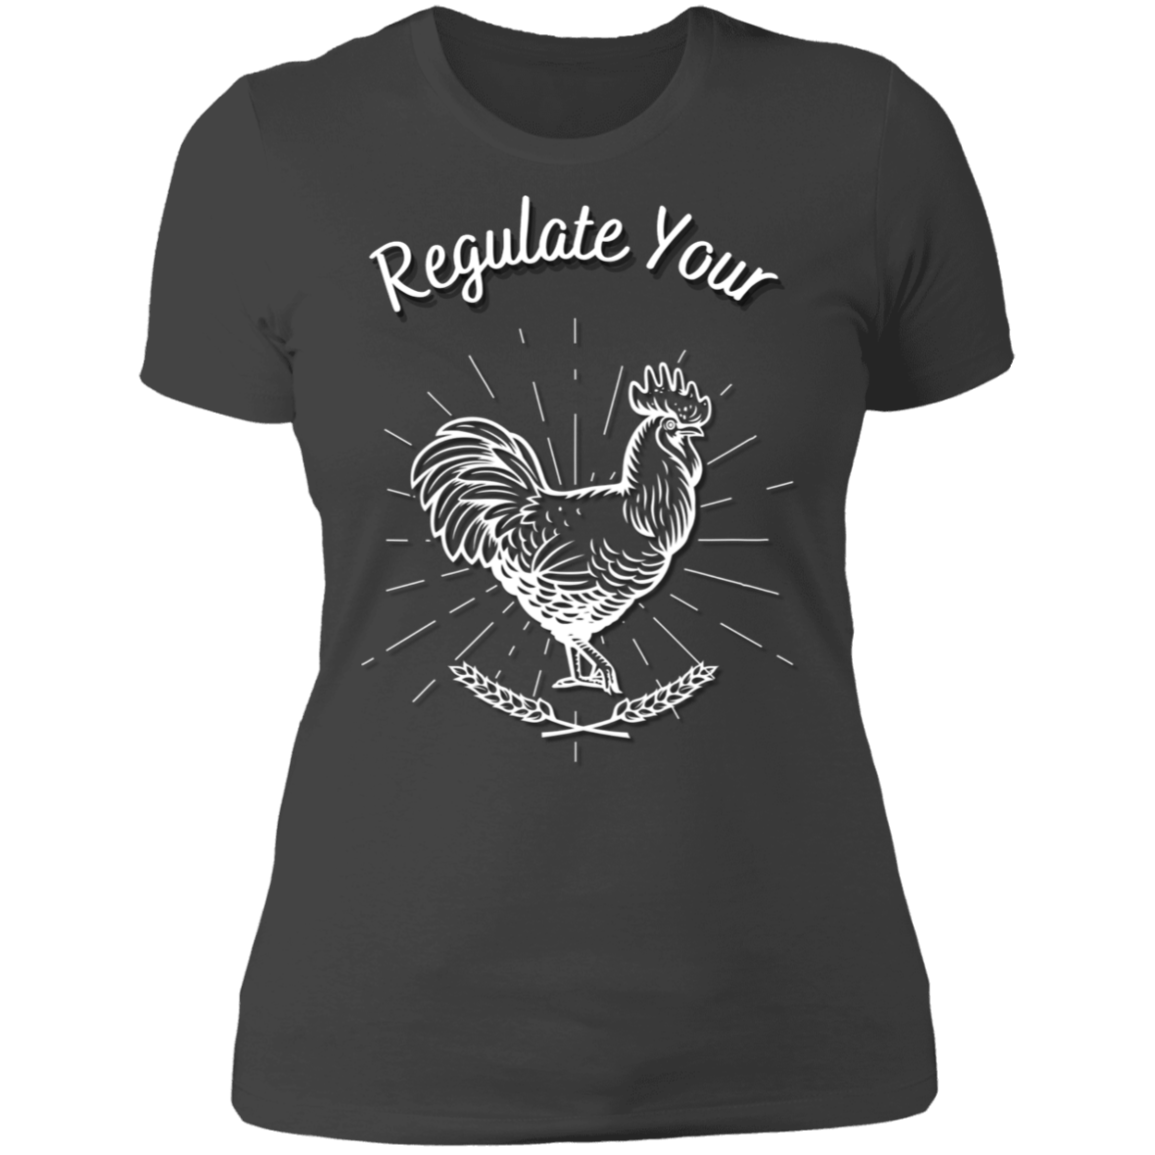 Regulate Your C**k - Ladies' Boyfriend T-Shirt